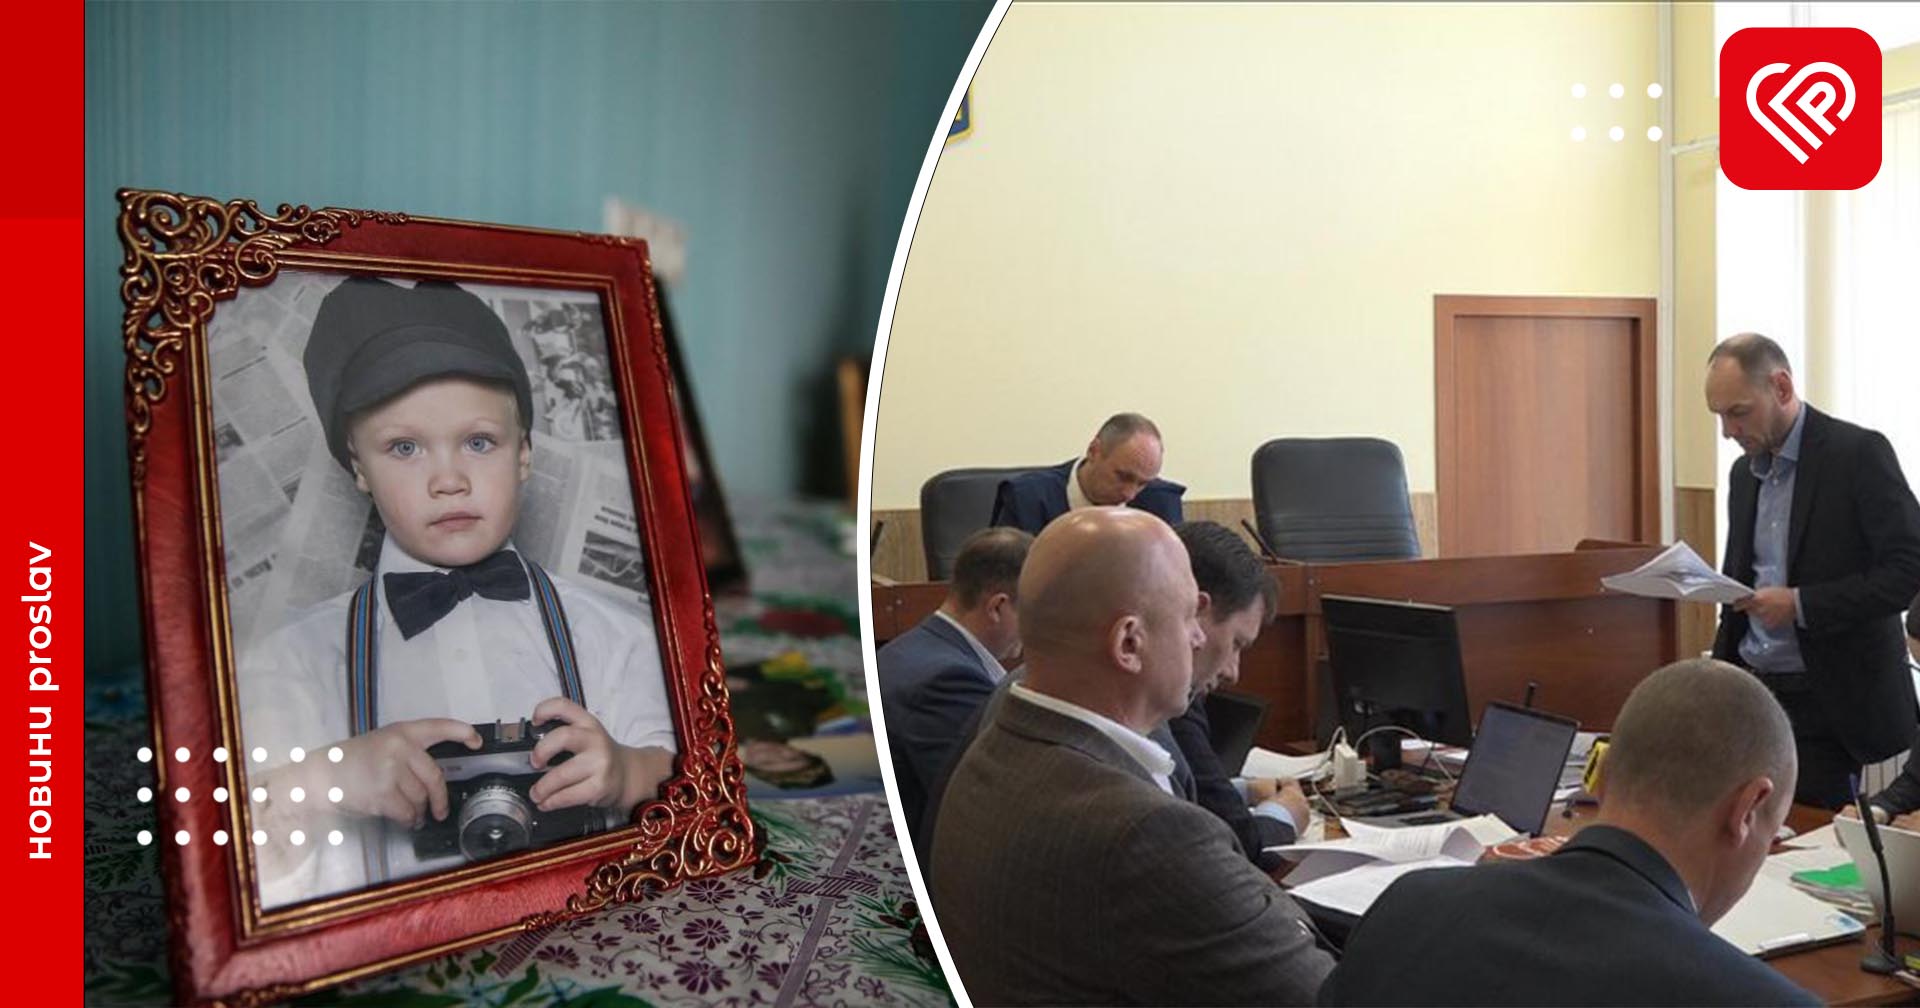 У справі Тлявова розпочалися судові дебати: прокурори просять найтяжчого покарання, родина вимагає стягнути компенсацію з двох обвинувачених